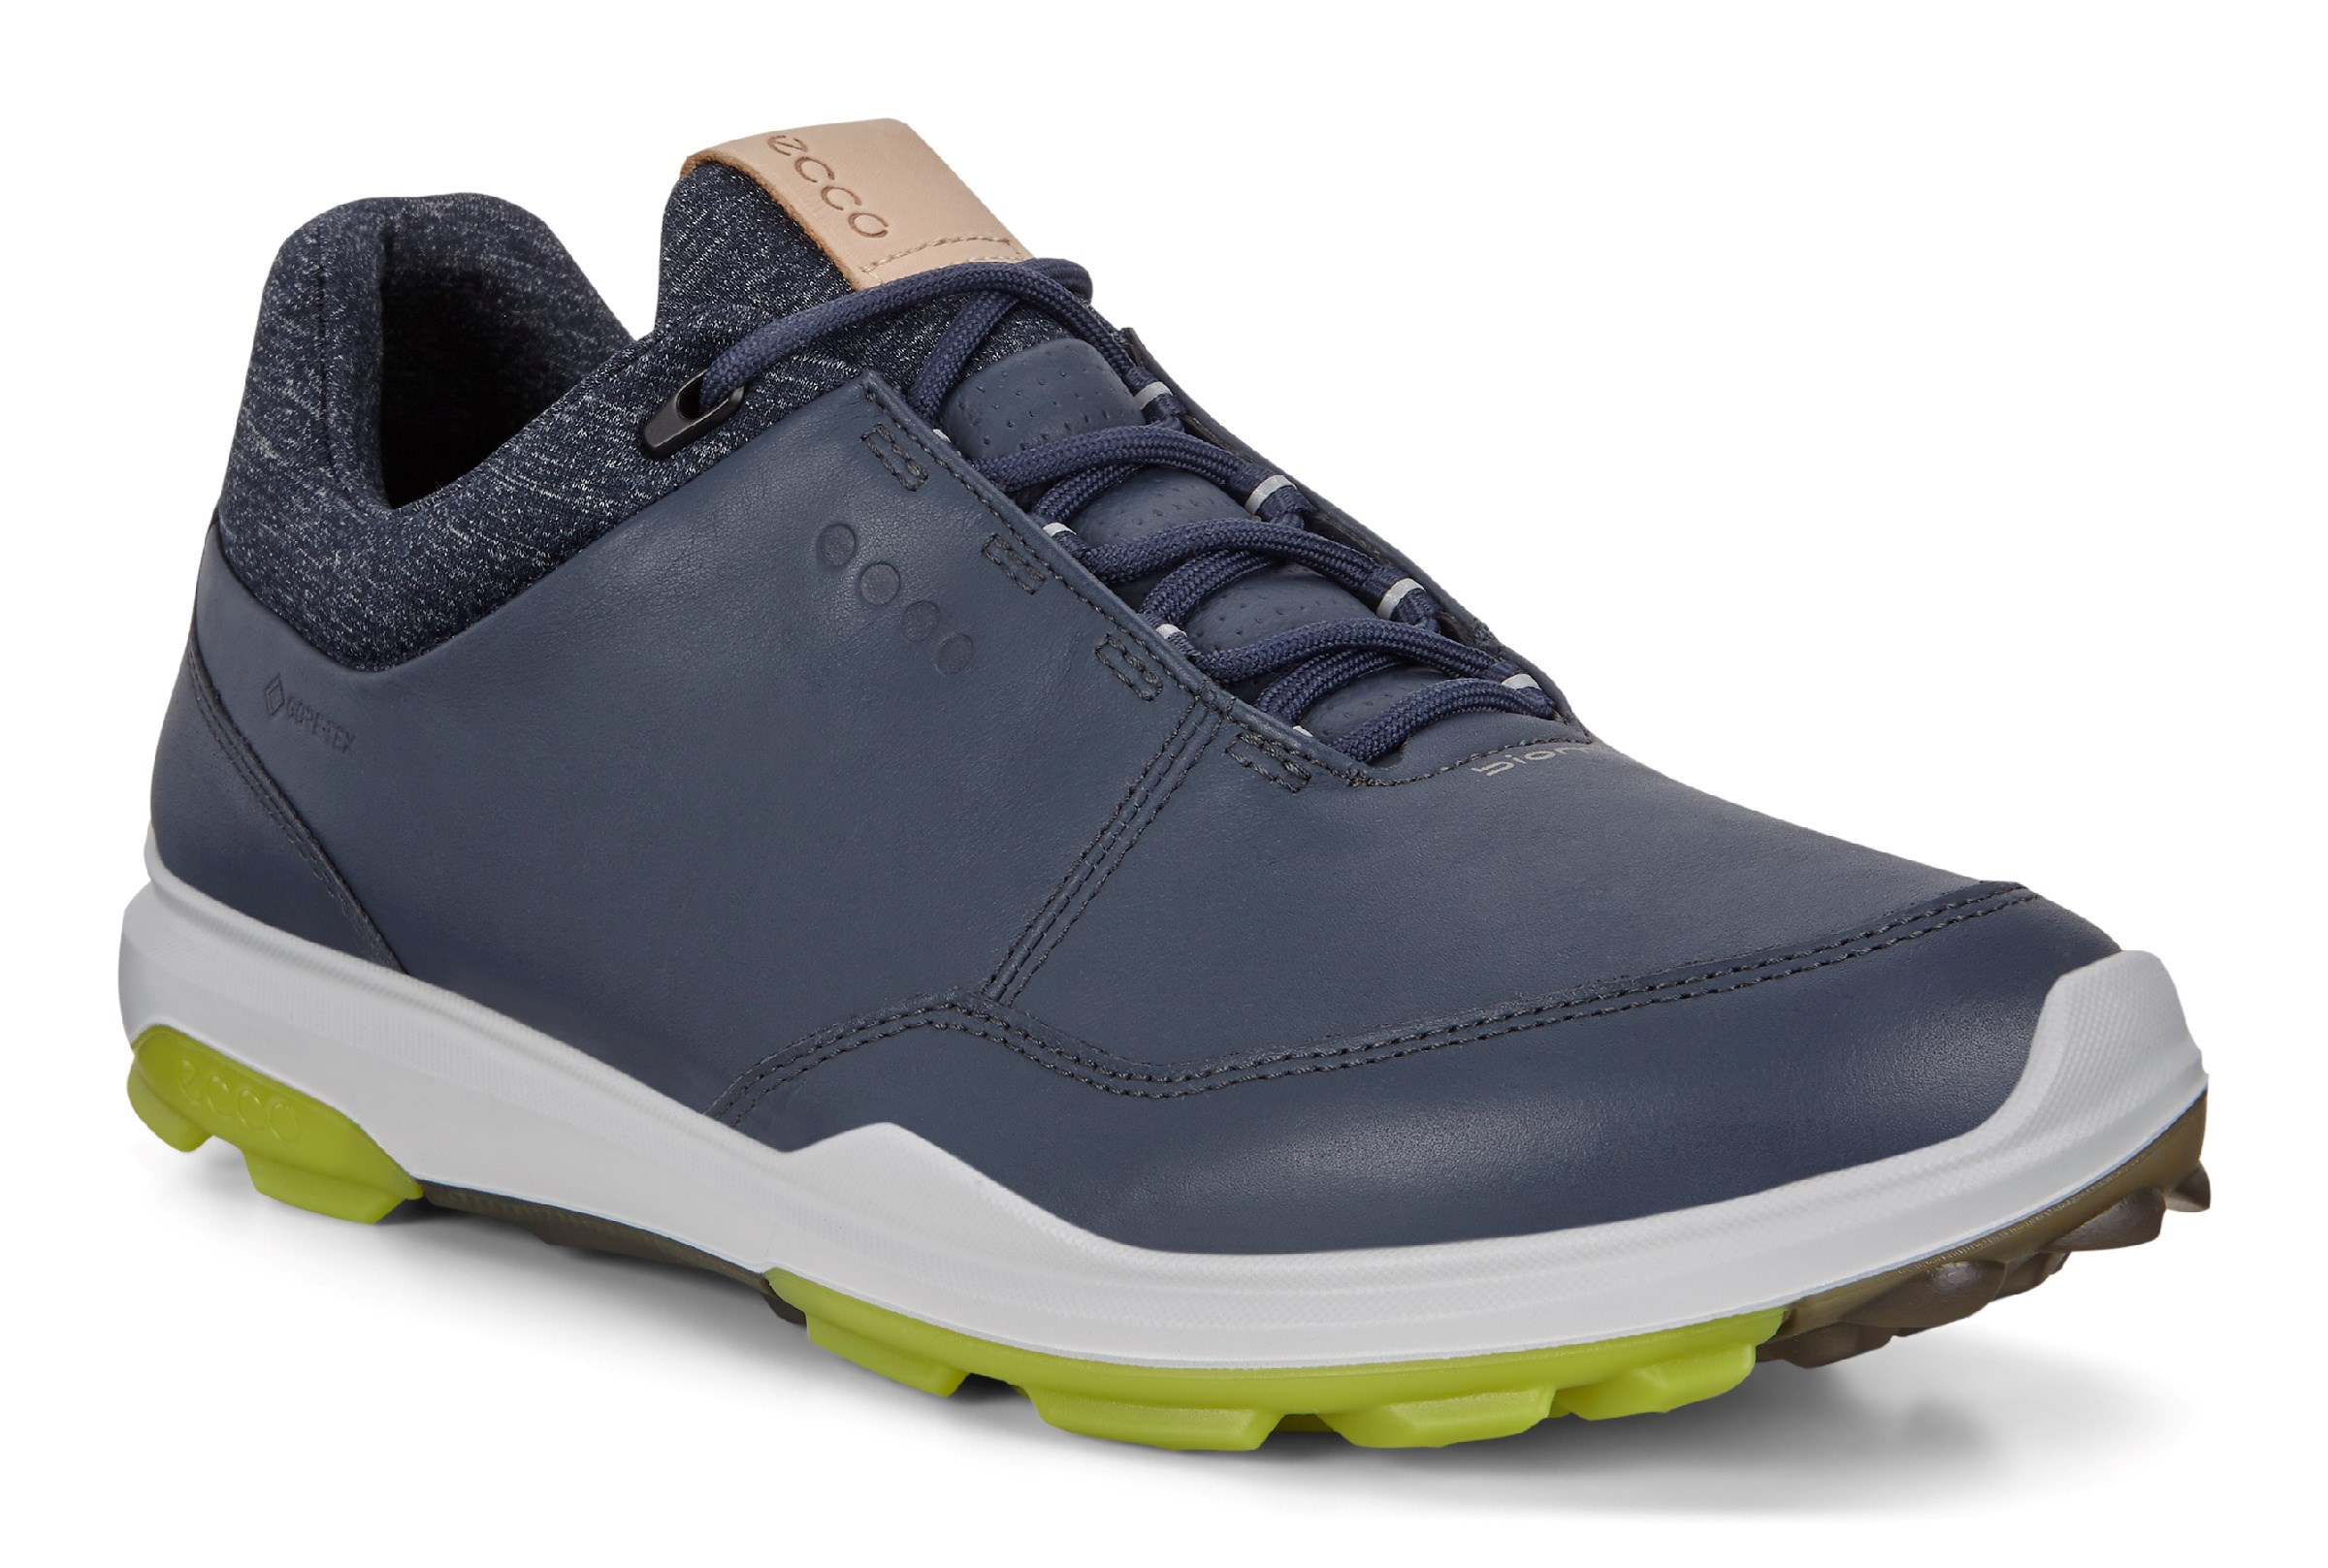 buy ecco golf shoes online